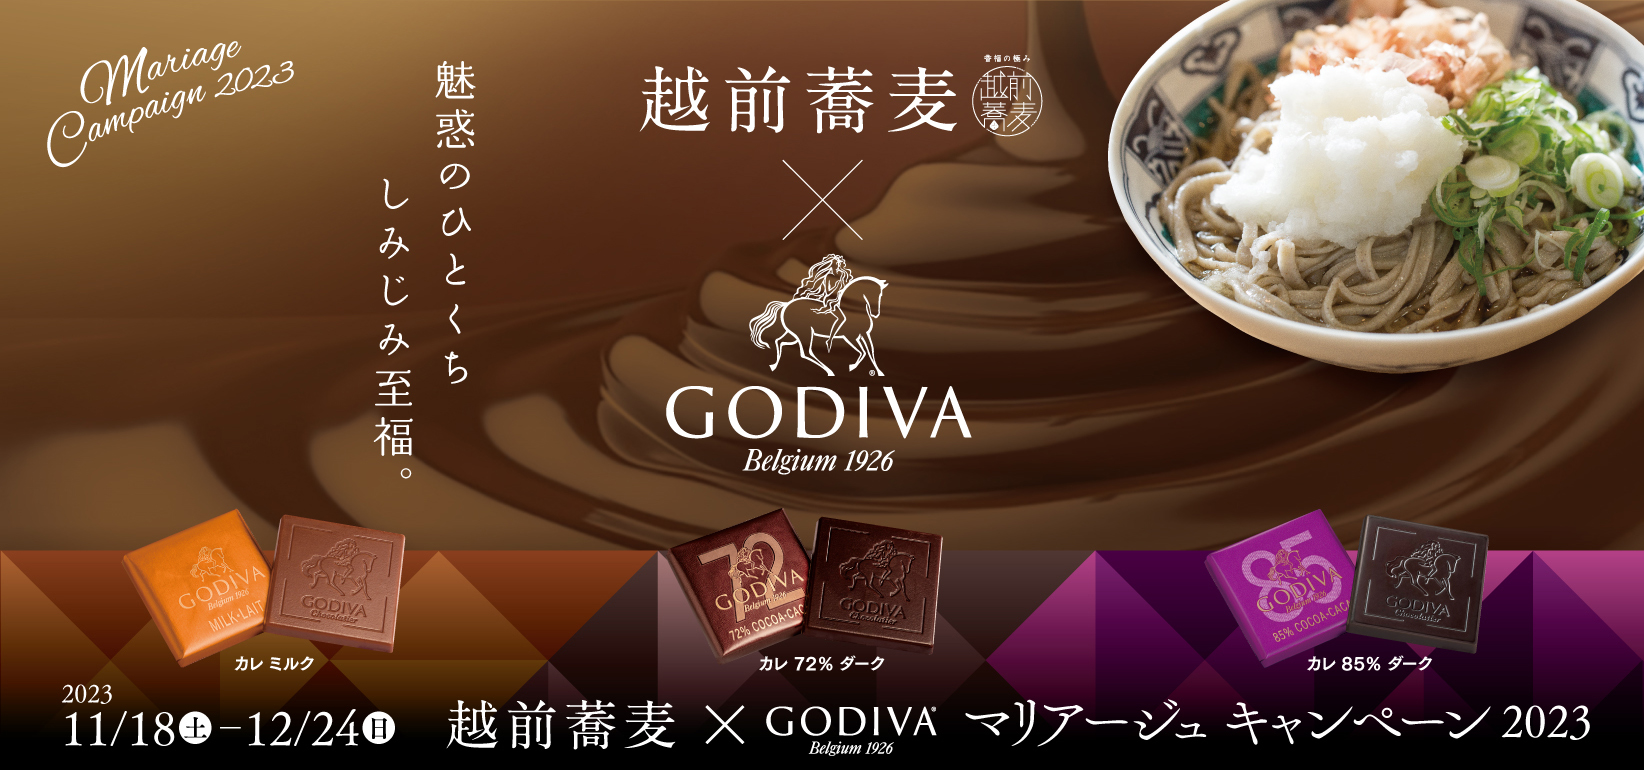 今年も福井の“そば”とチョコレートがコラボした「越前蕎麦 × GODIVA マリアージュキャンペーン2023」が県内117店舗で開催してるよ♪